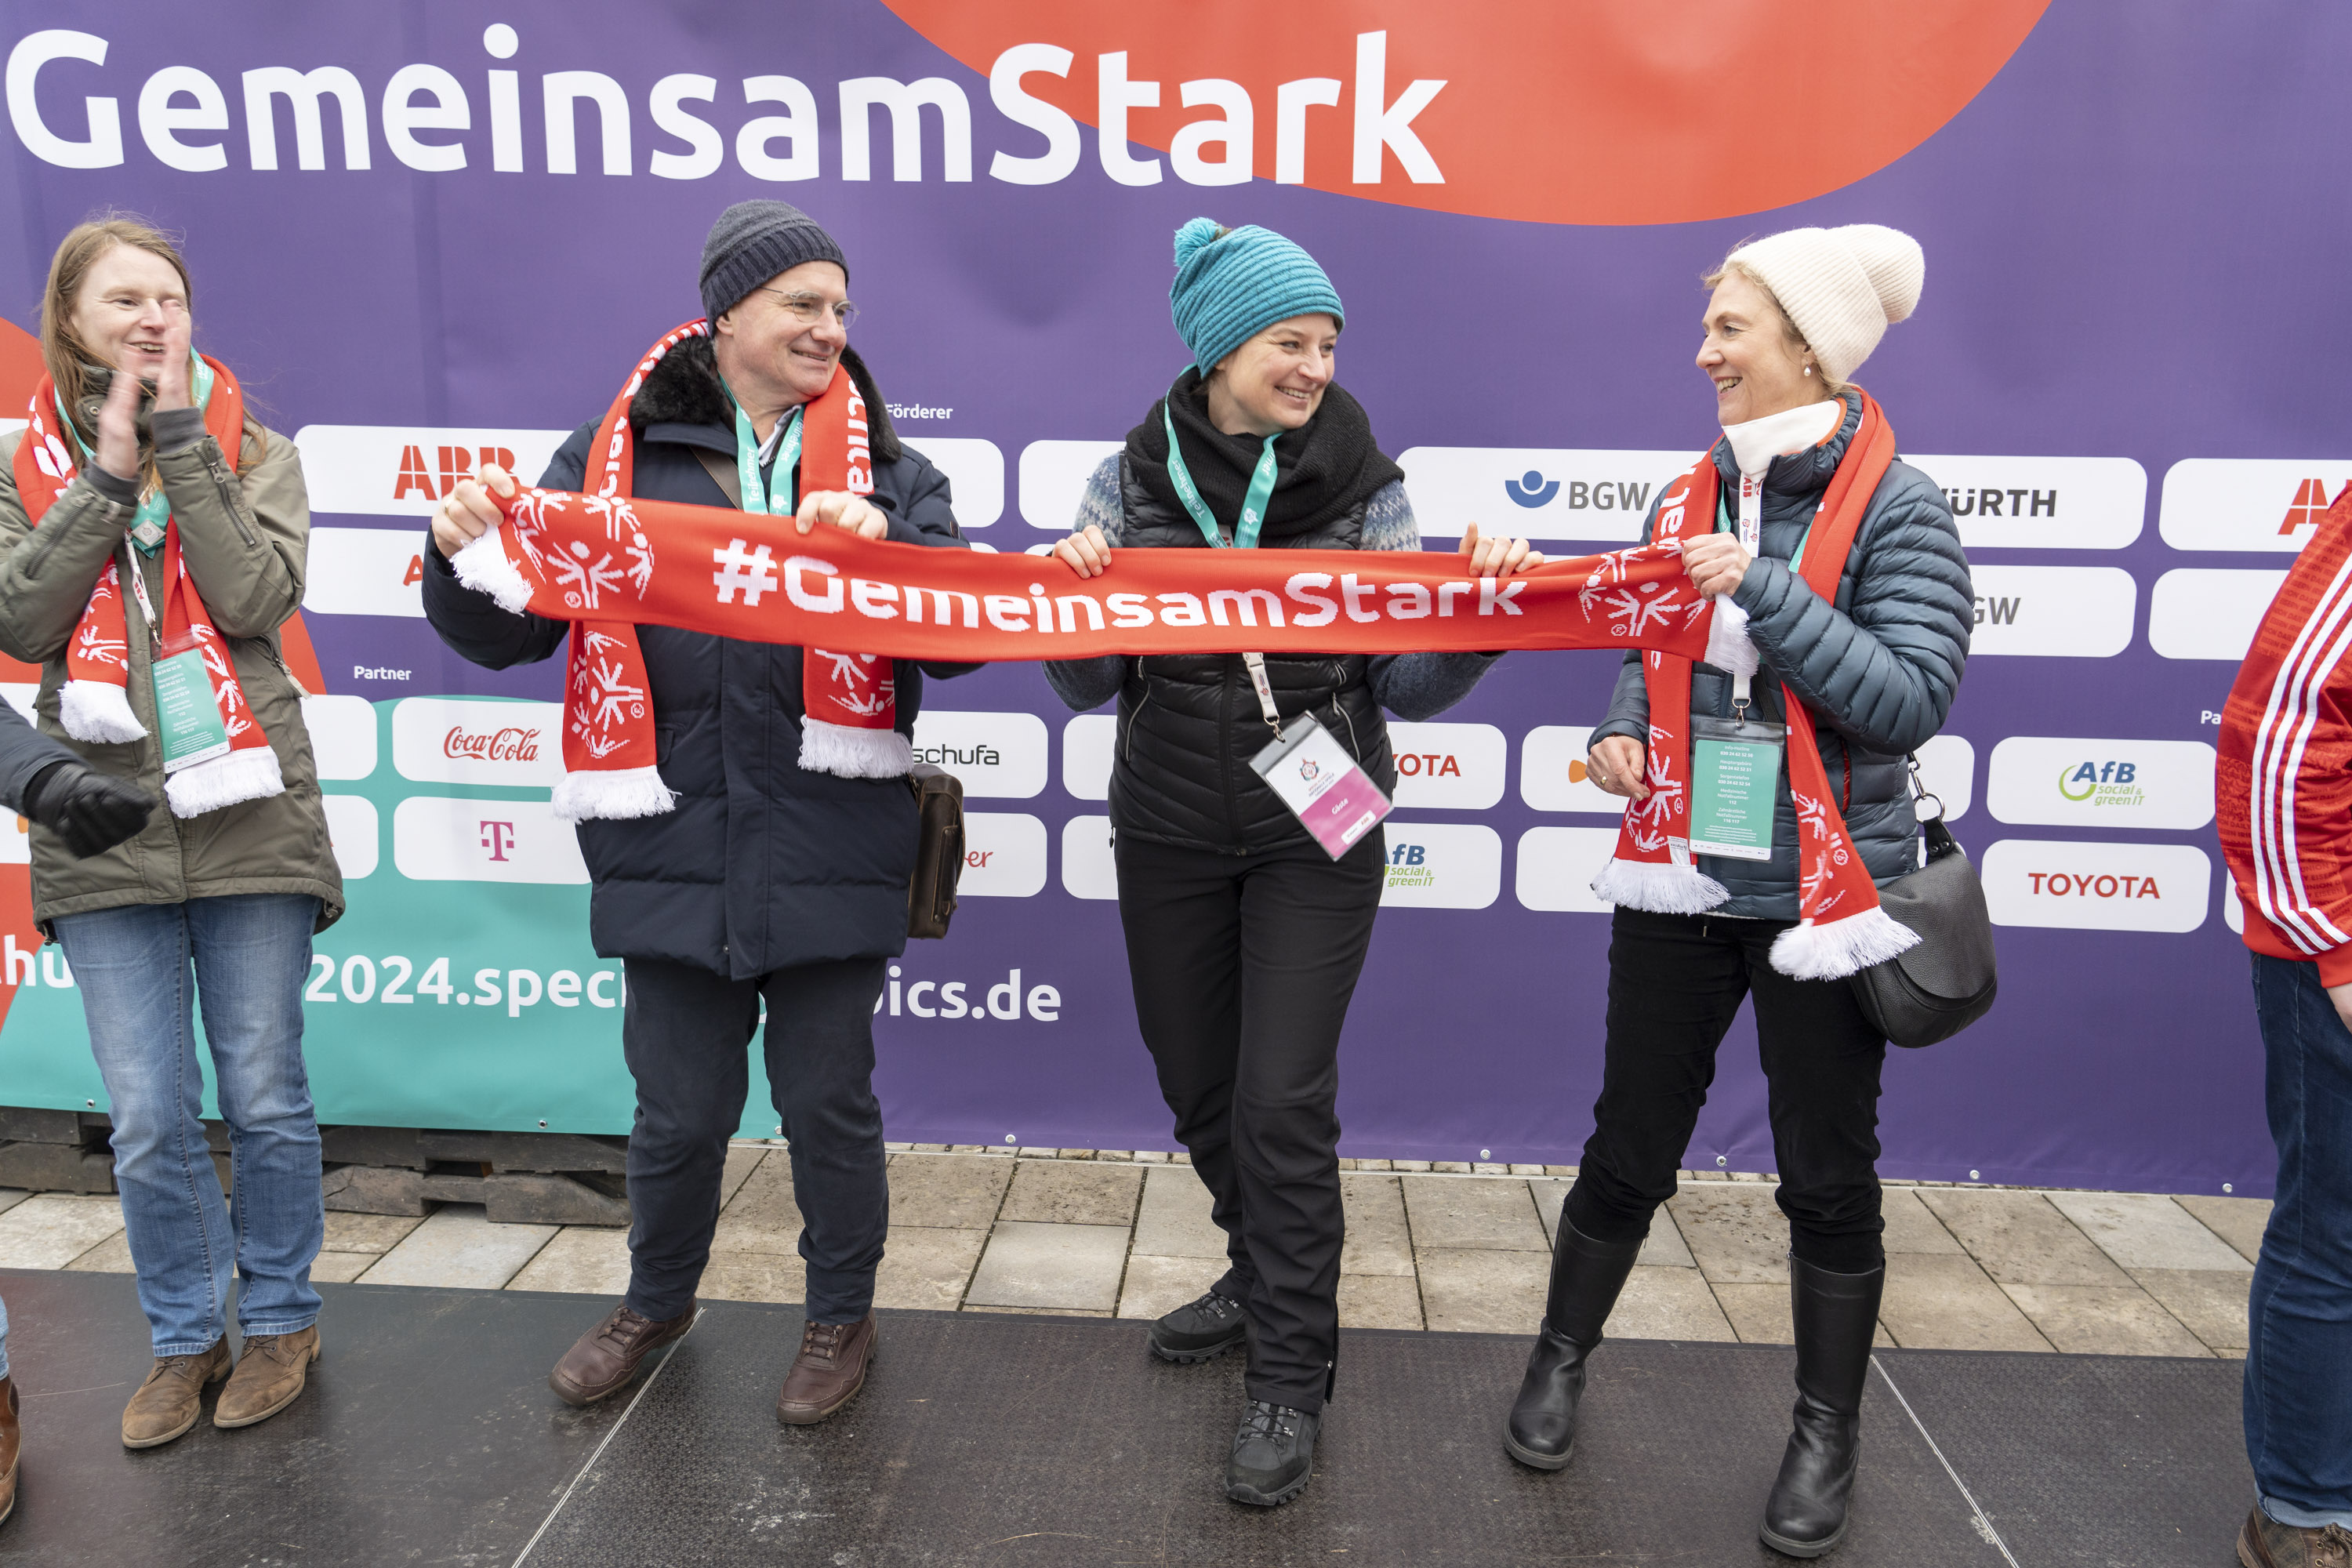 4 Frauen nebeneinander vor einer Wand mit diversen Firmen-Logos und dem Slogan "GemeinsamStark". 3 der Frauen halten zusammen einen Schal mit der Aufschrift "#GemeinsamStark".